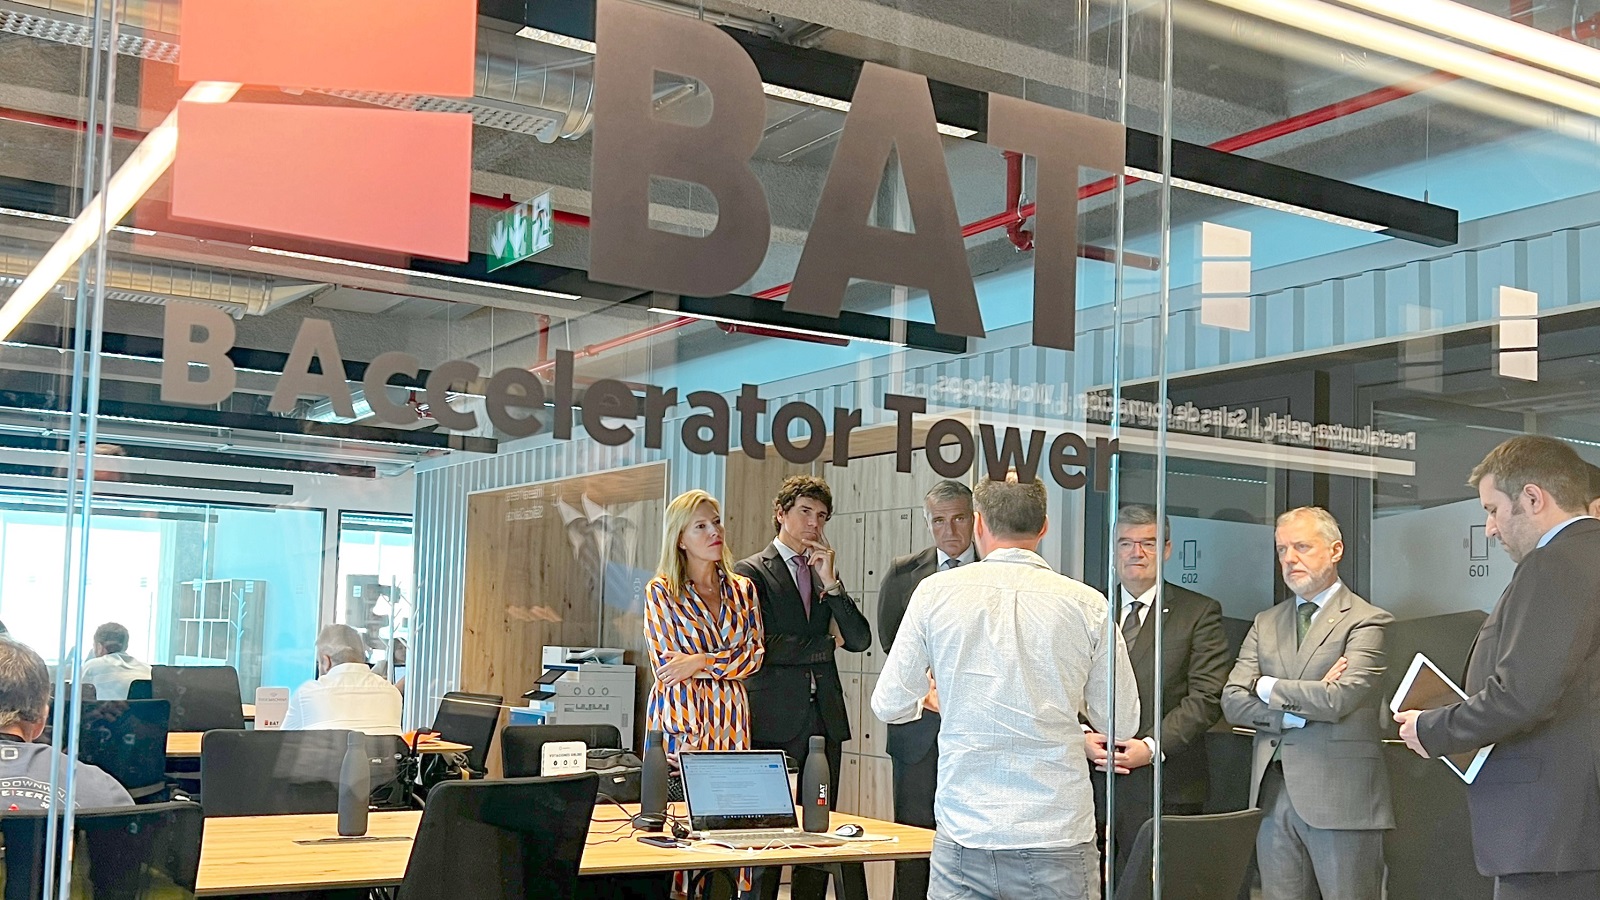 imagen de la visita de inauguración a B Accelerator Tower